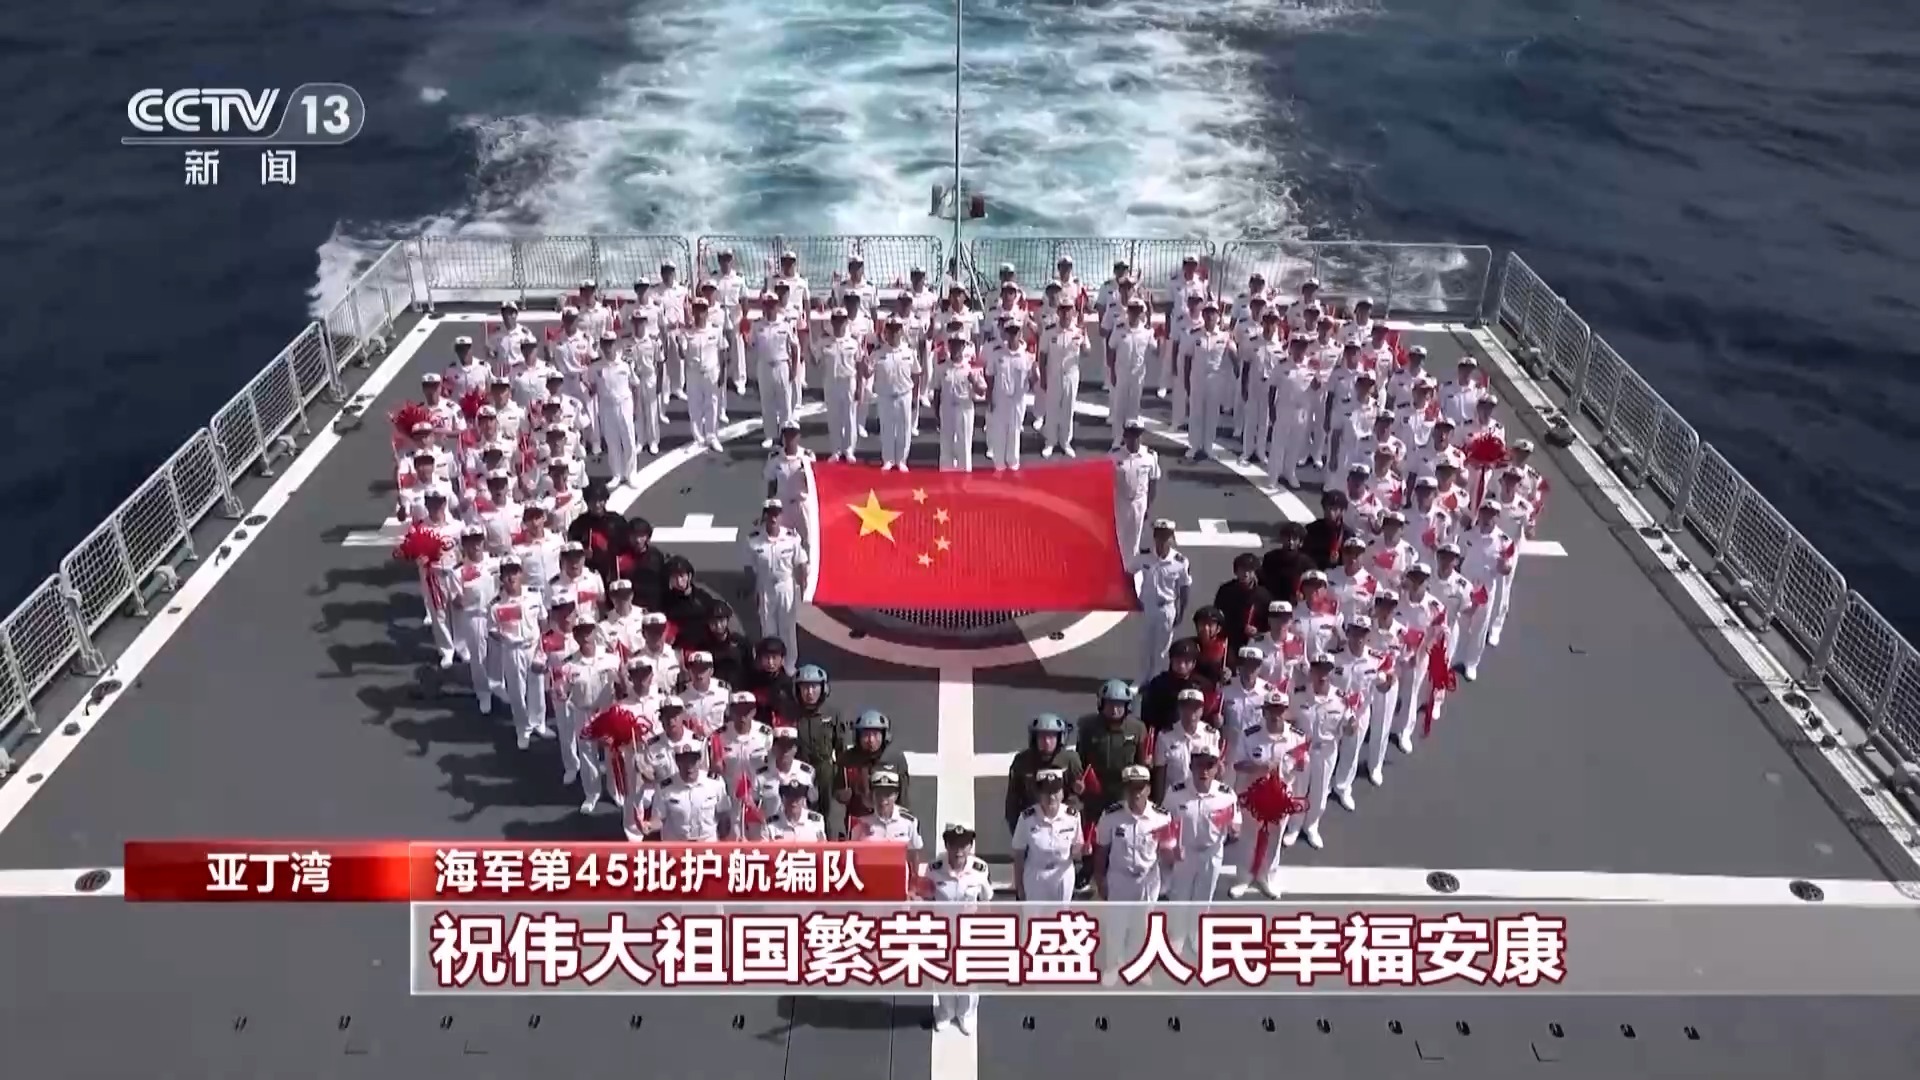 两天前,海军乌鲁木齐舰还安全护送中国香港籍林海1号散货船通过危险